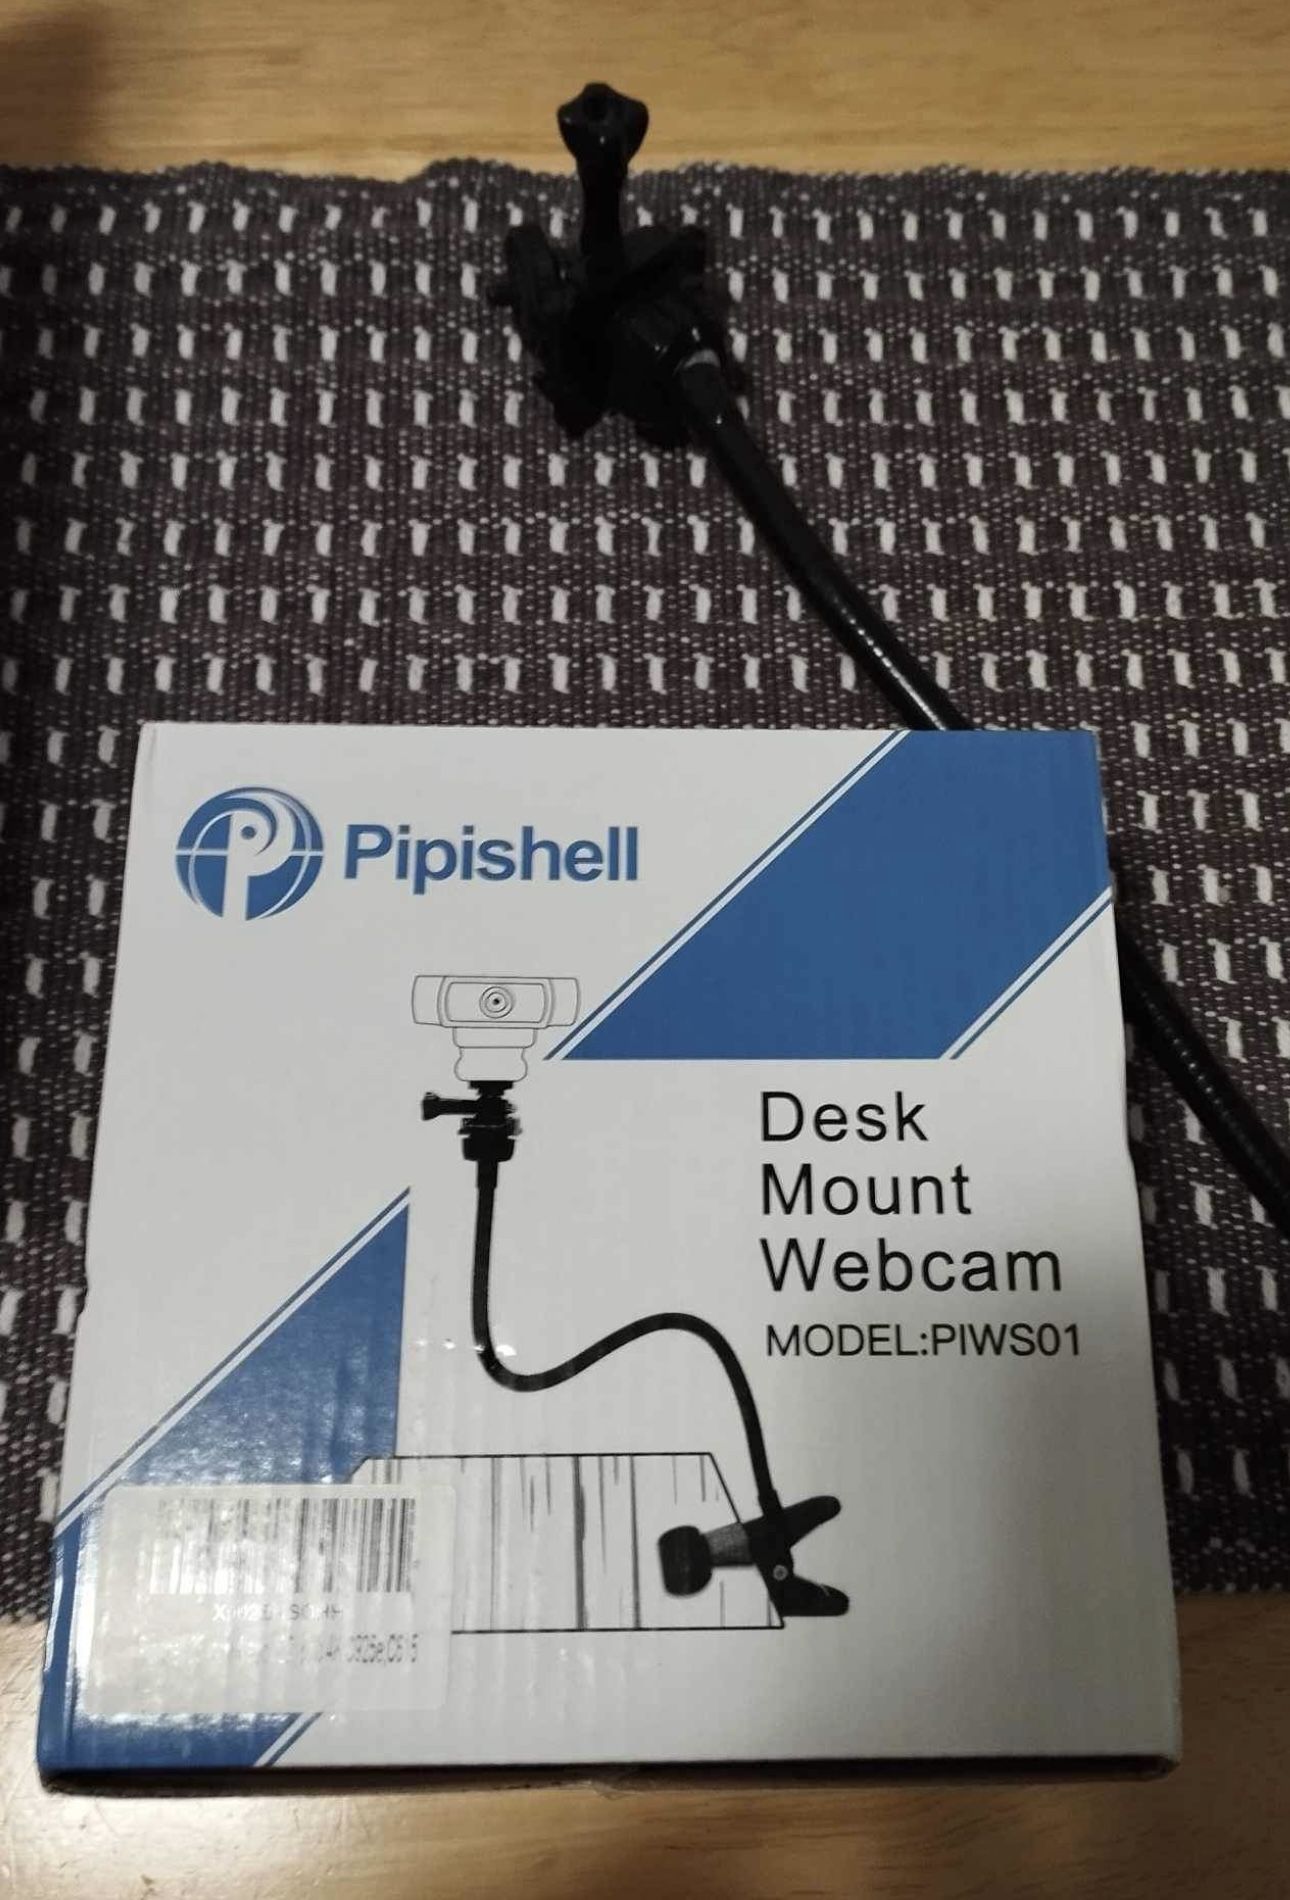 Desk Mount Webcam